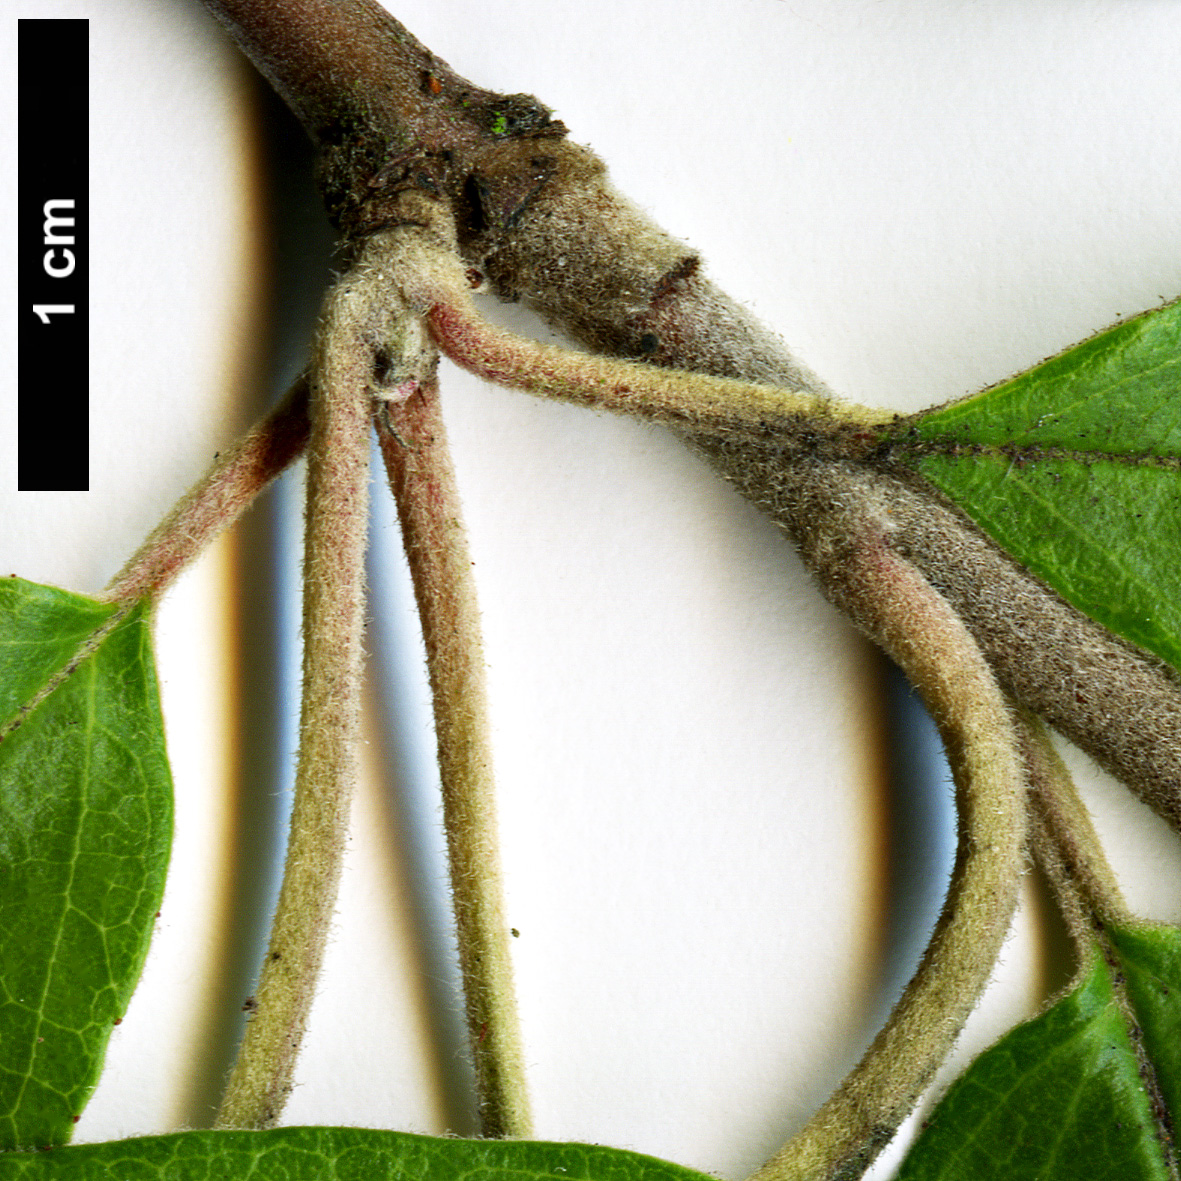 High resolution image: Family: Rosaceae - Genus: Docynia - Taxon: delavayi